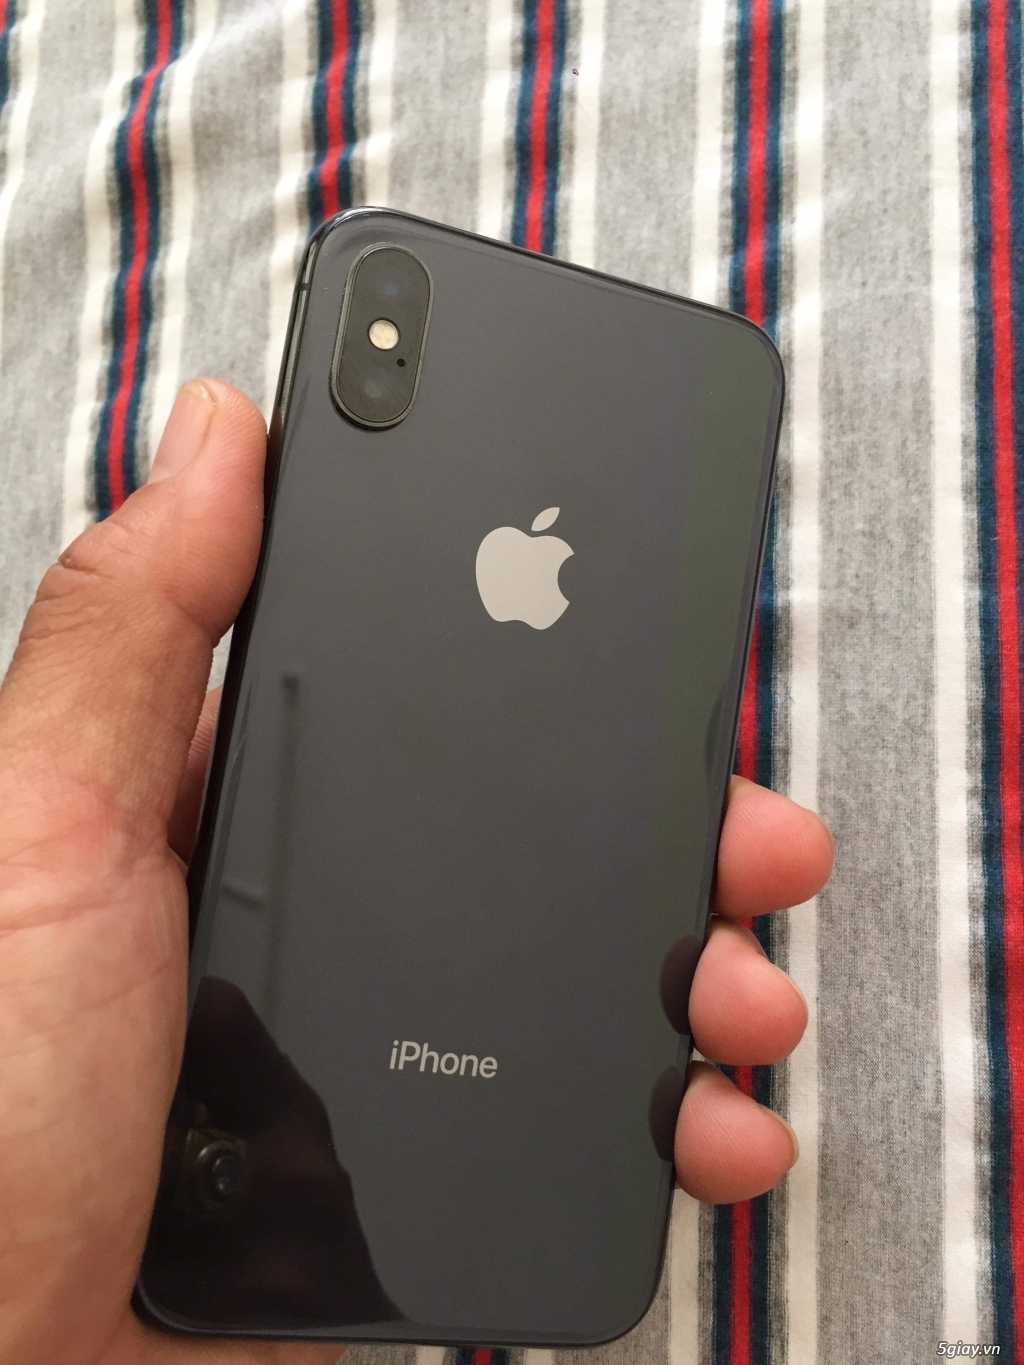 Sự độc đáo của iPhone X đen zin chỉ có thể được cảm nhận qua hình ảnh. Thật tuyệt vời khi bạn có thể sở hữu một chiếc iPhone X đen zin. Hãy đến và xem những hình ảnh đẹp của sản phẩm này.